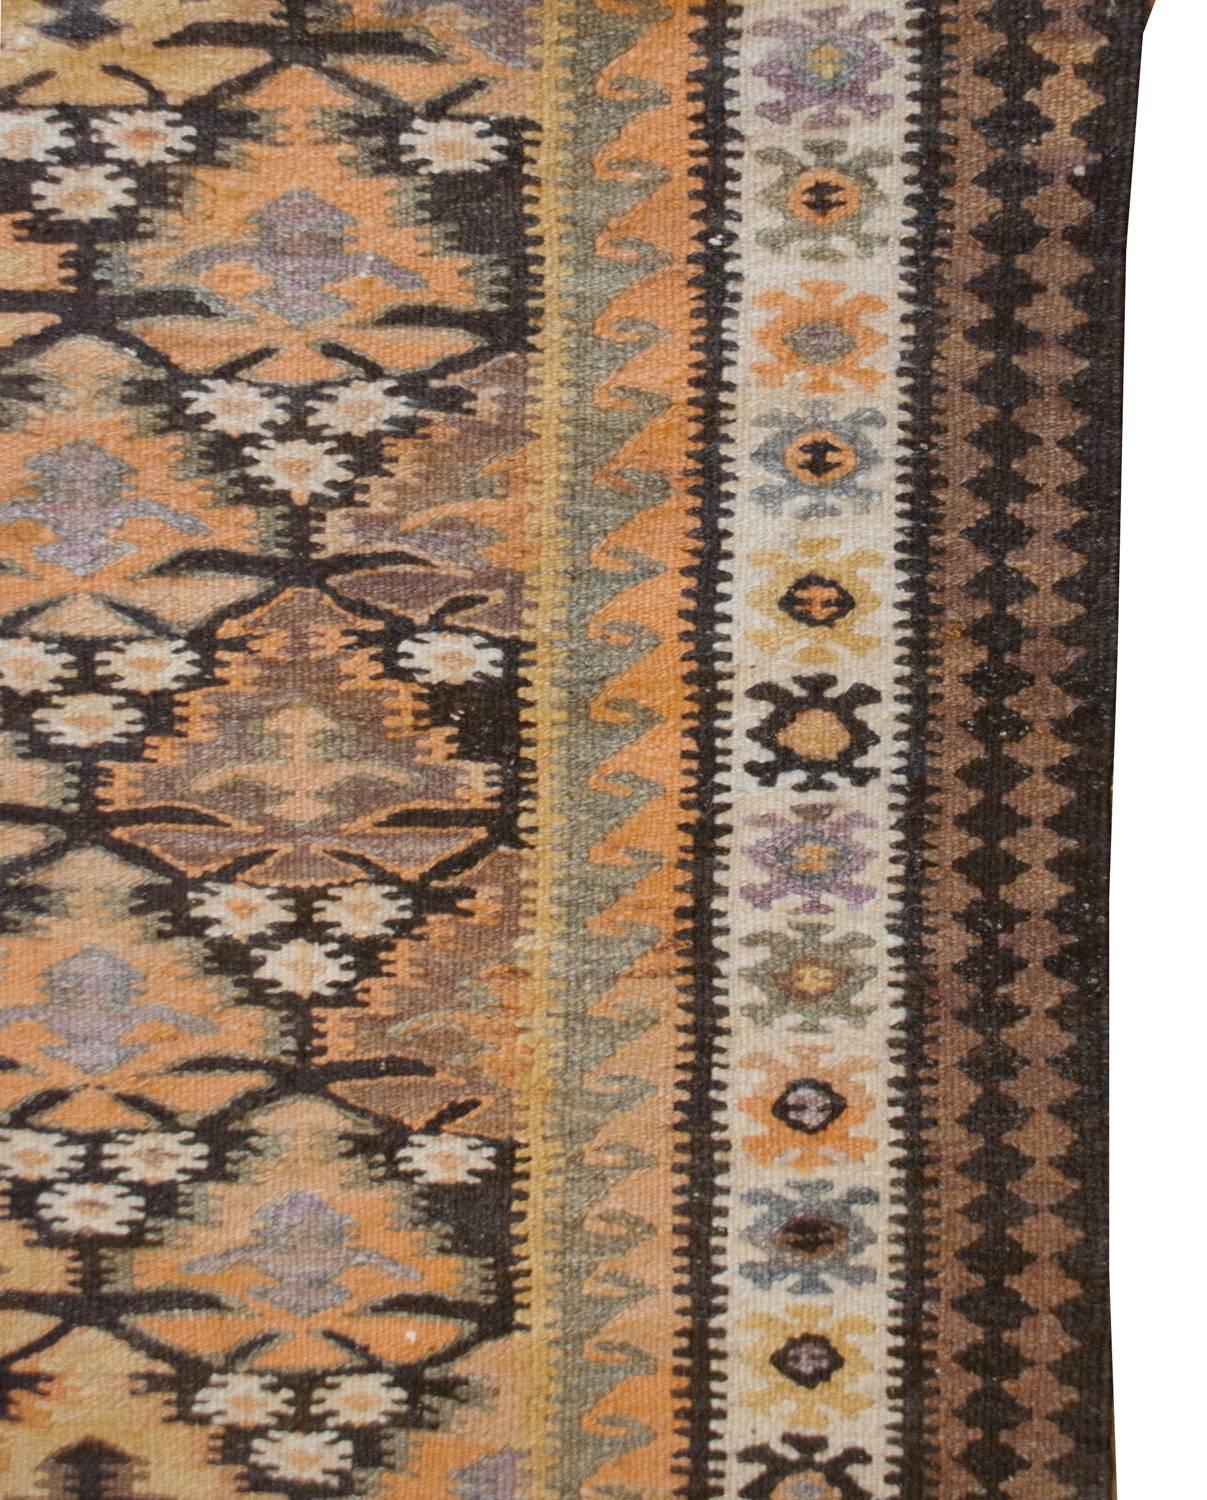 Eine wunderbare frühen 20. Jahrhundert persischen Qazvin Kilim Teppich mit einem schönen stilisierten mehrfarbigen Baum des Lebens gemusterten Feld mit unglaublichen natürlichen pflanzlich gefärbte Wolle gewebt. Die Grenze ist exquisit, mit